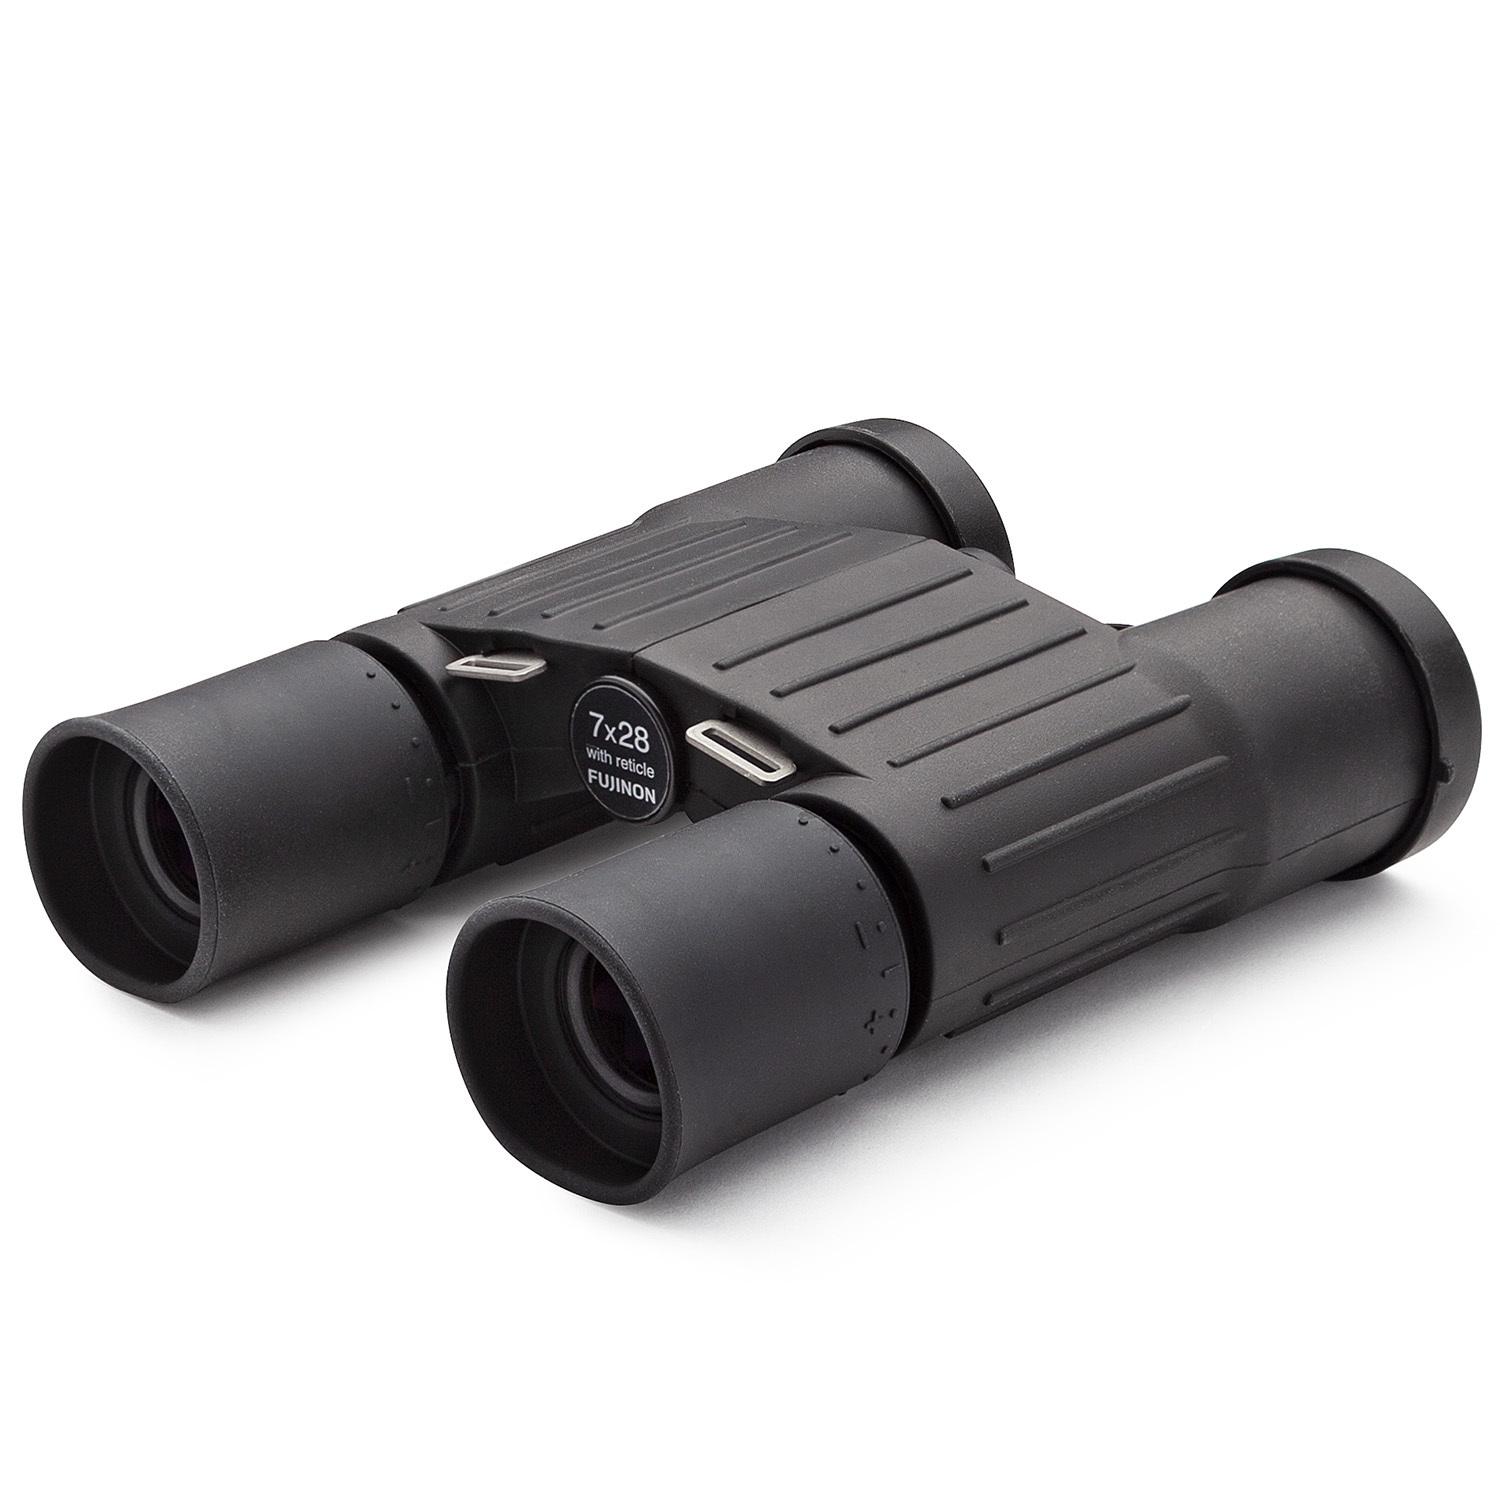 Fujinon 7x28 DIF Waterproof Binocular for $44.99 Shipped